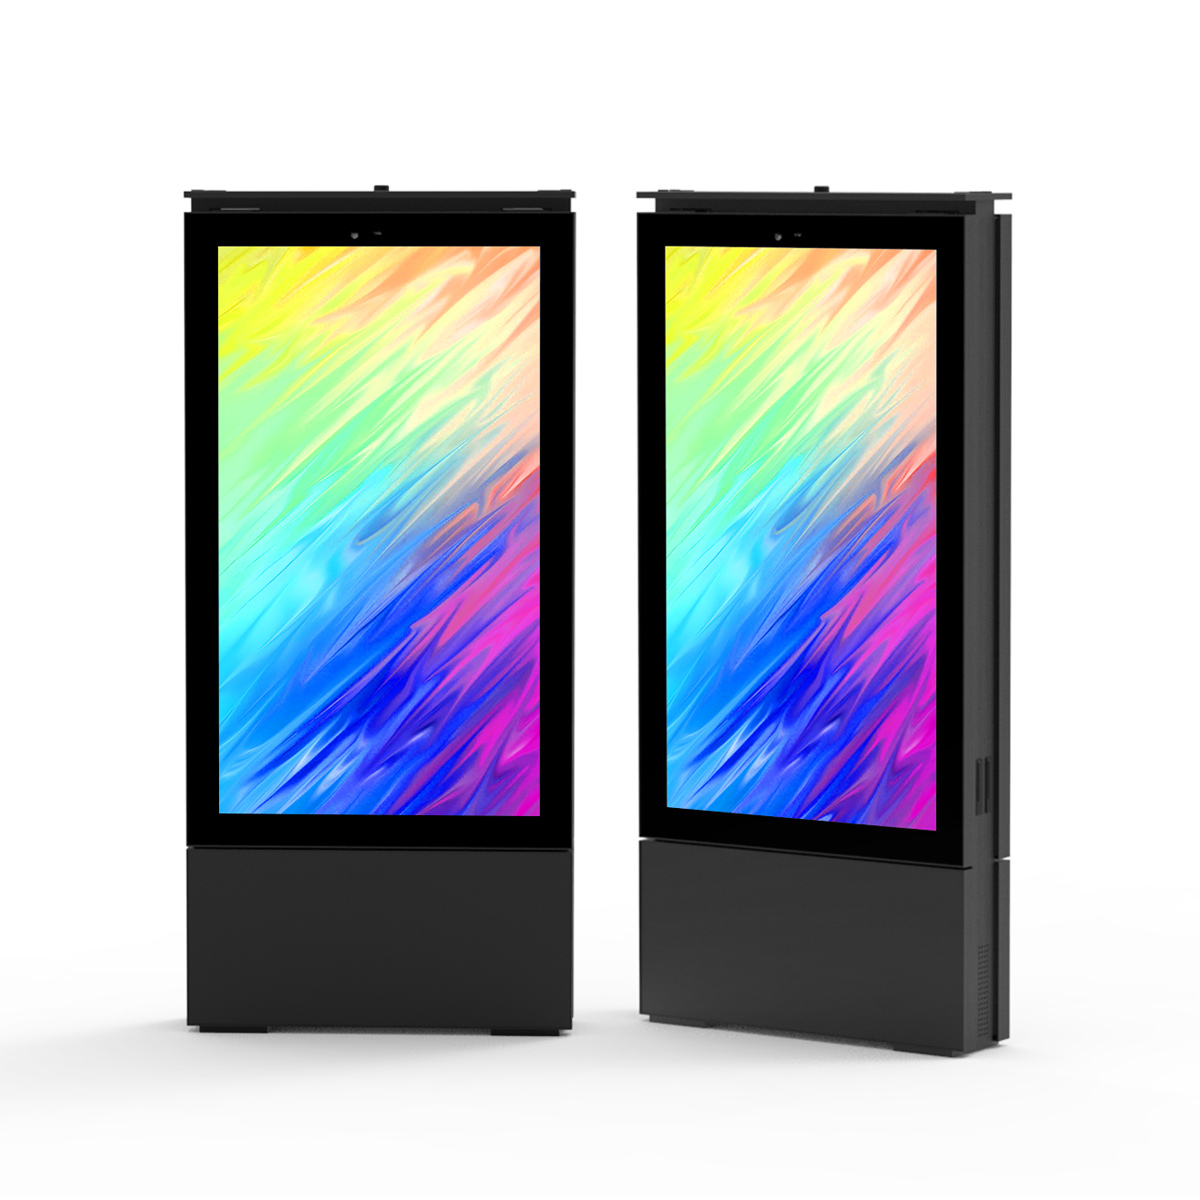 Sinalização digital externa de alto brilho LCD de dupla face de 3500nits com tela Full-fit